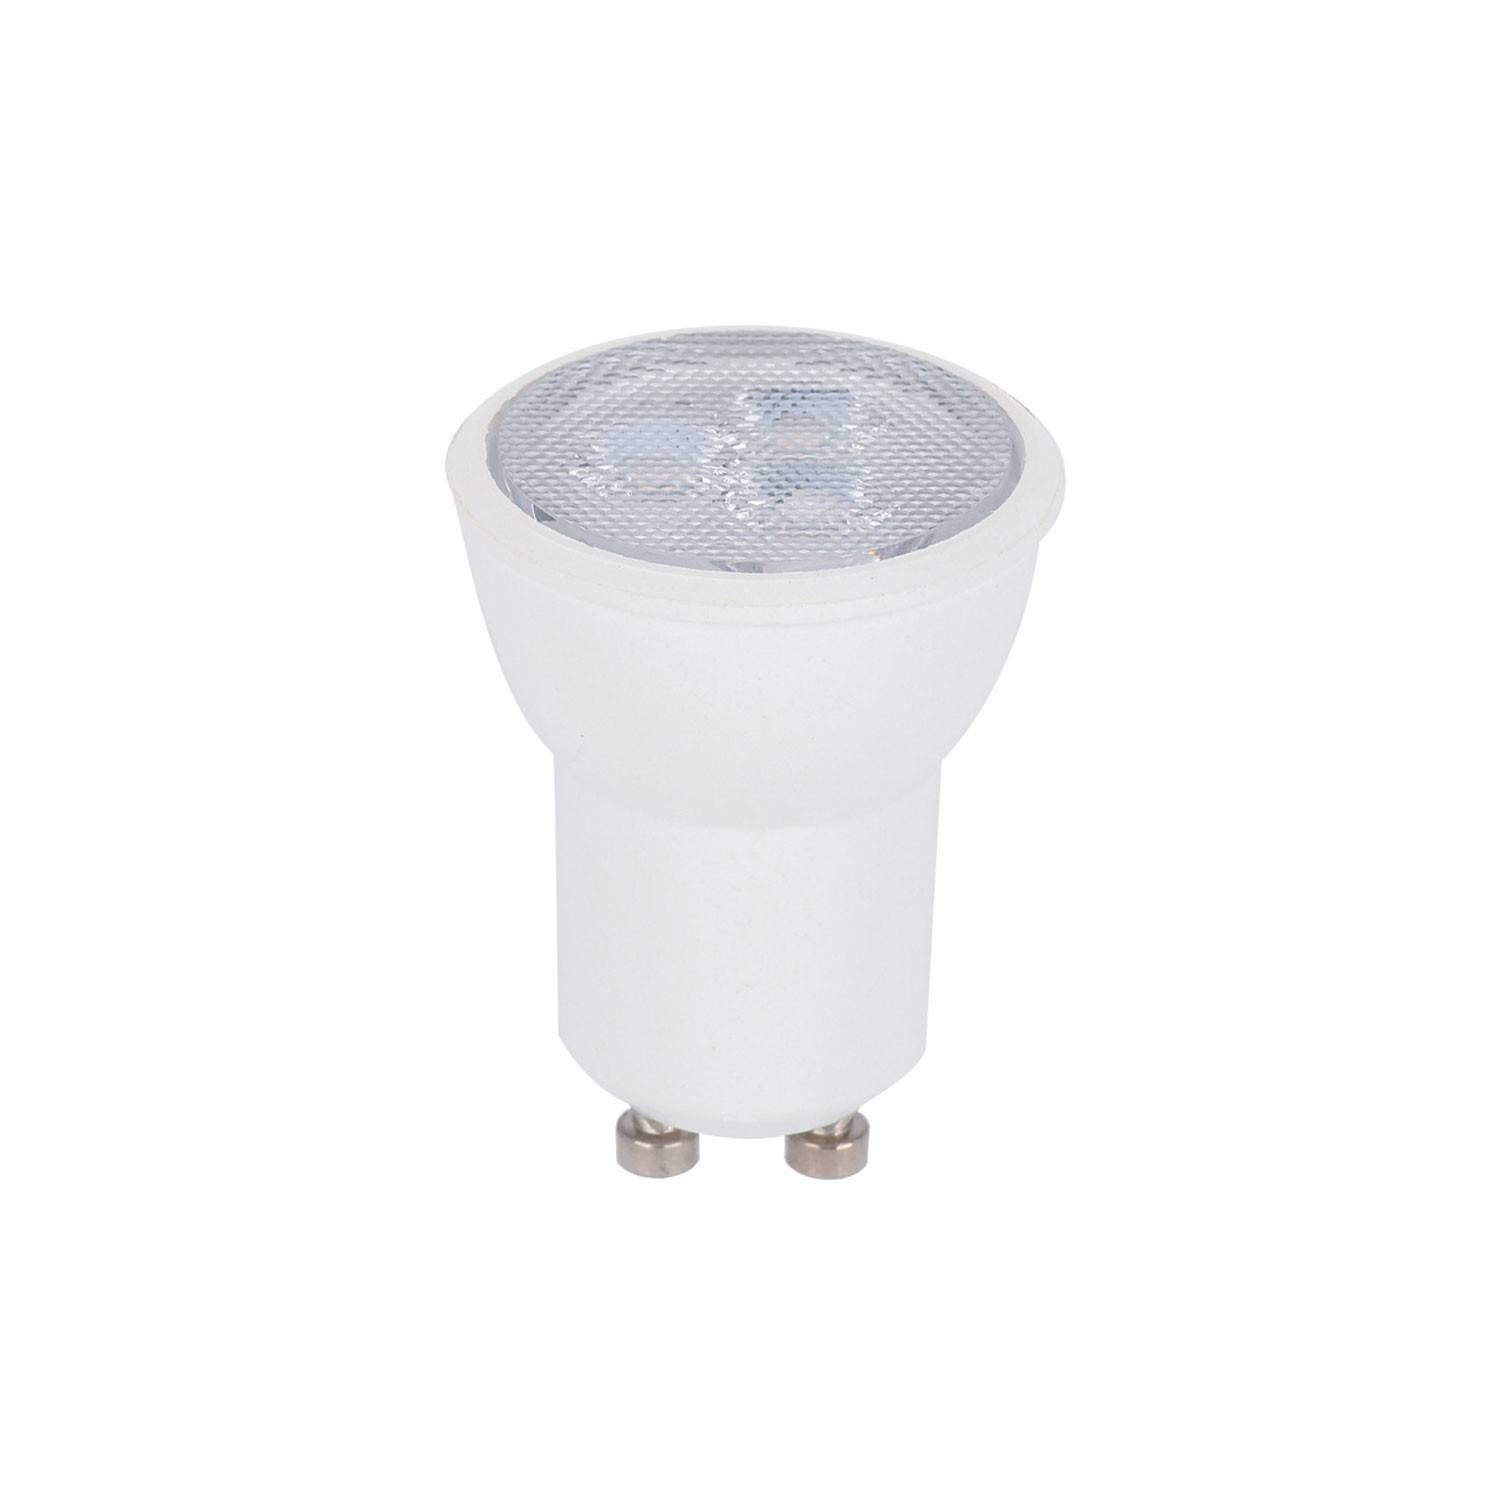 Pack 3 LED ampoules GU10 lumiere froid- Wonderlamp